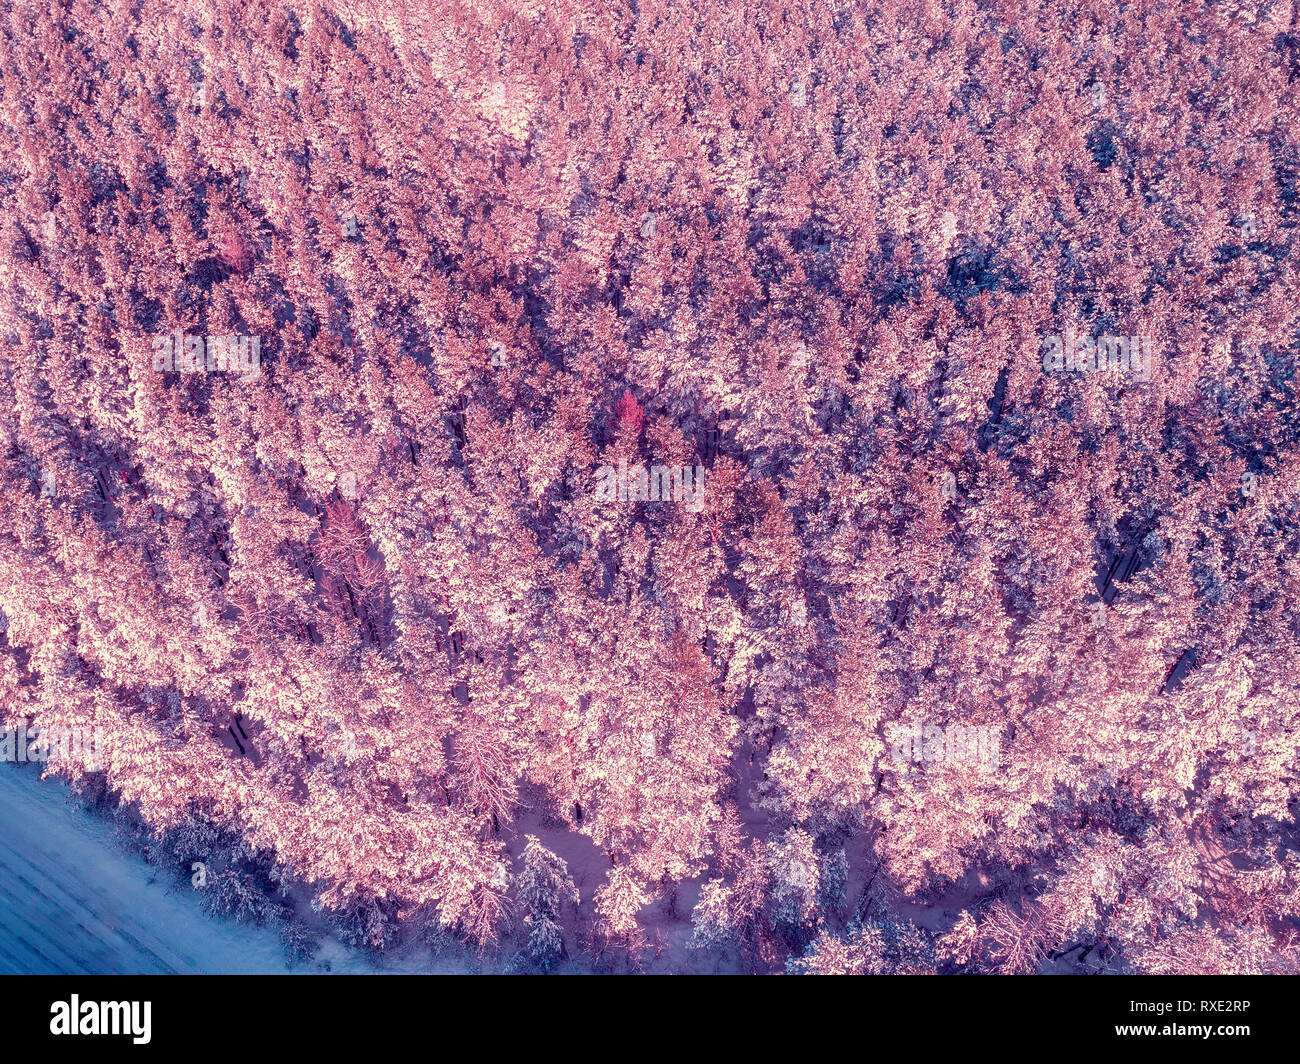 Vista aérea del bosque de pinos cubiertos de nieve de invierno Foto de stock